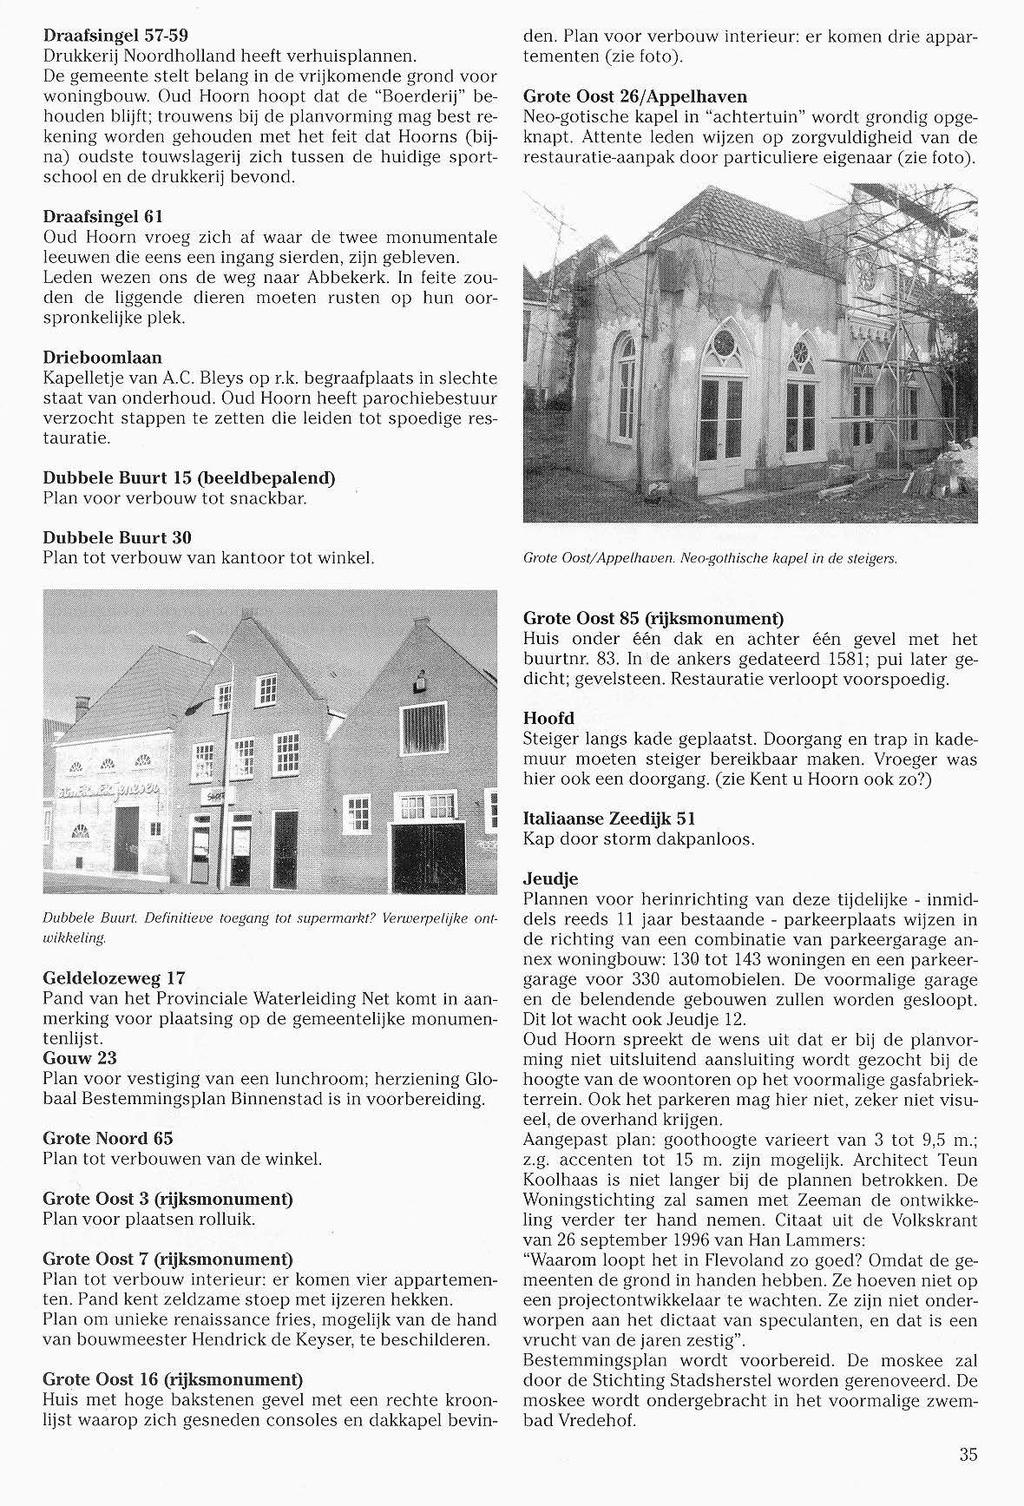 Draafsingel 57-59 Drukkerij Noordholland heeft verhuisplannen. De gemeente stelt belang in de vrijkomende grond voor woningbouw.